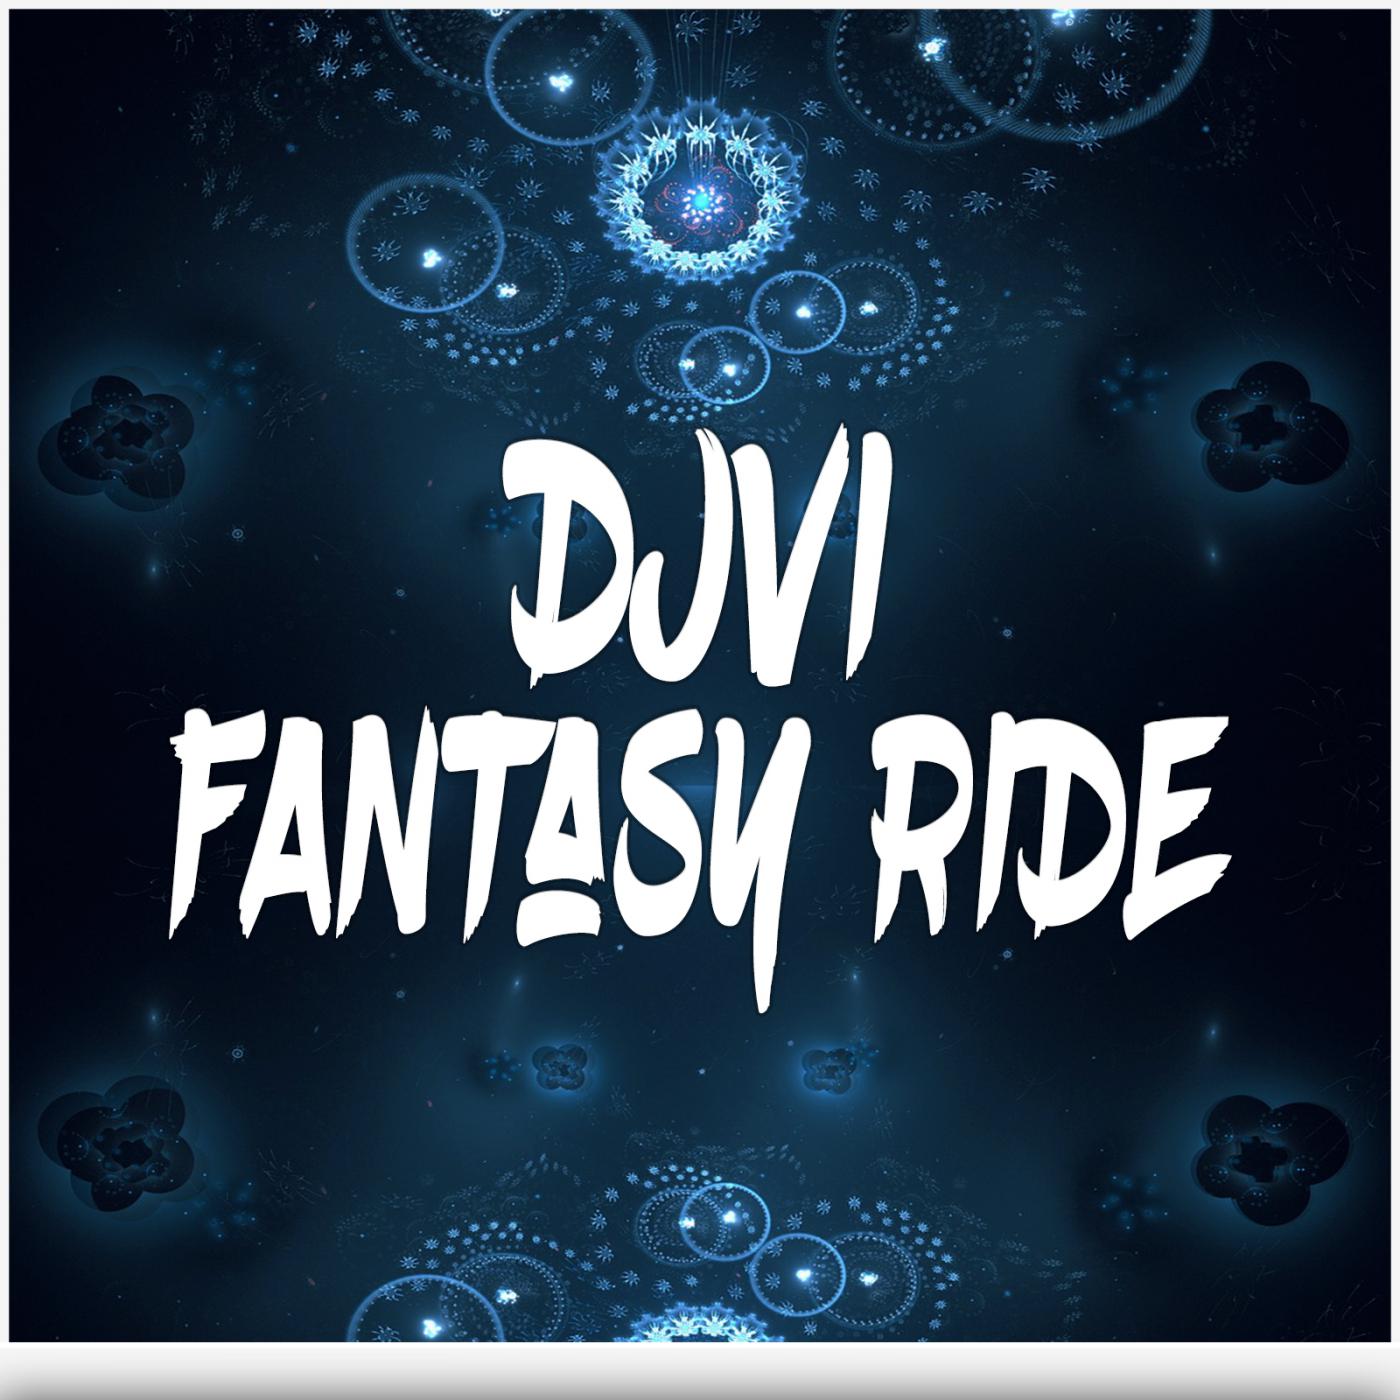 Djvi - Fantasy Ride (Original Mix)